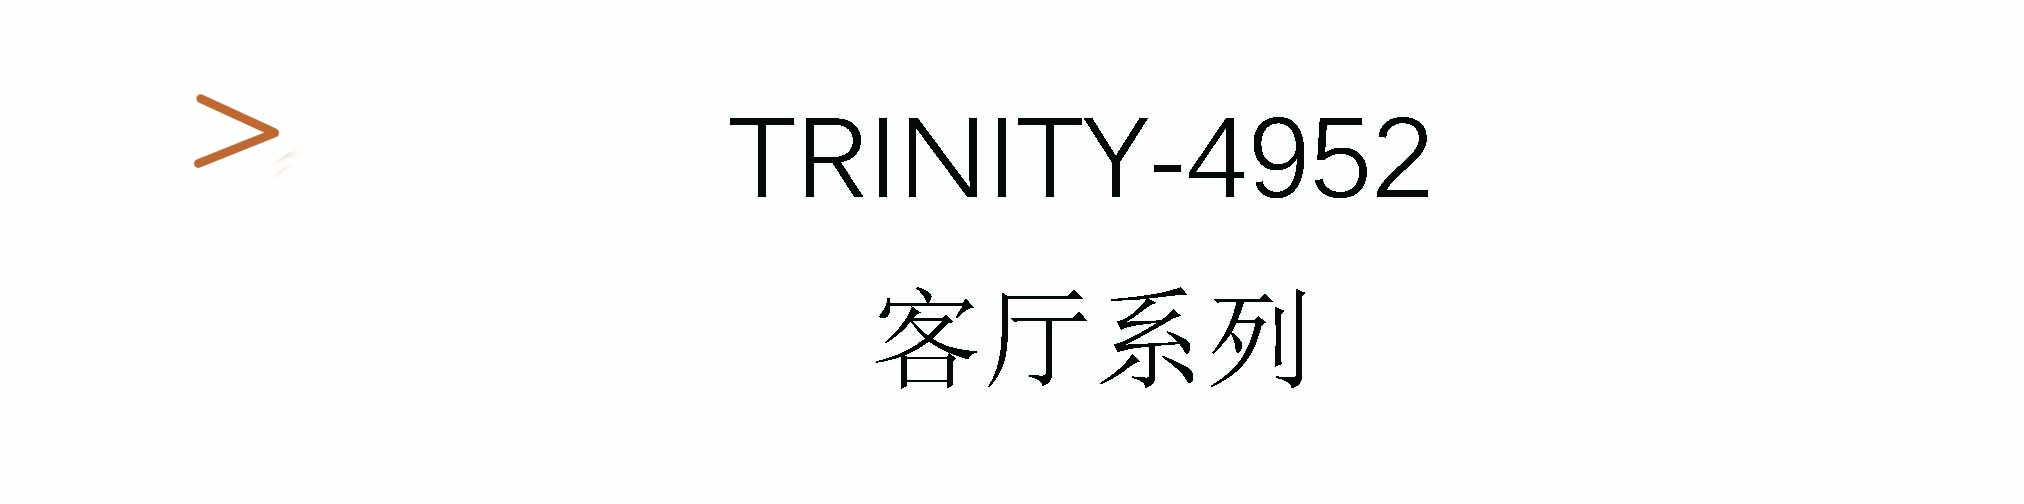 Trinity-4952